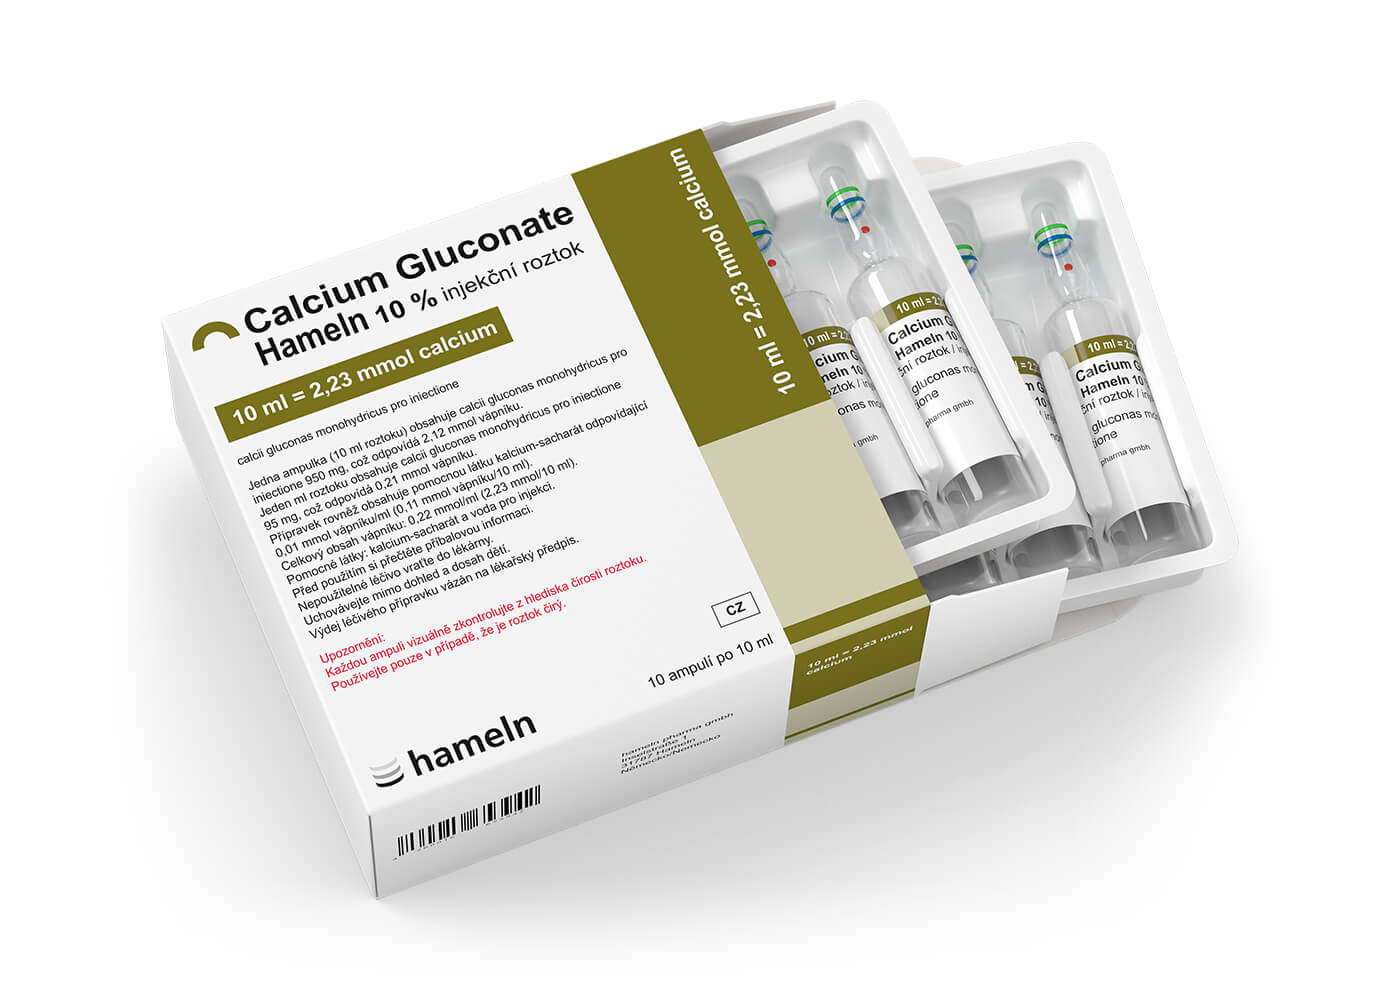 Calcium_Gluconate_CZ-SK_10Prozent_in_10_ml_Pack-Amp_10St_2020-04